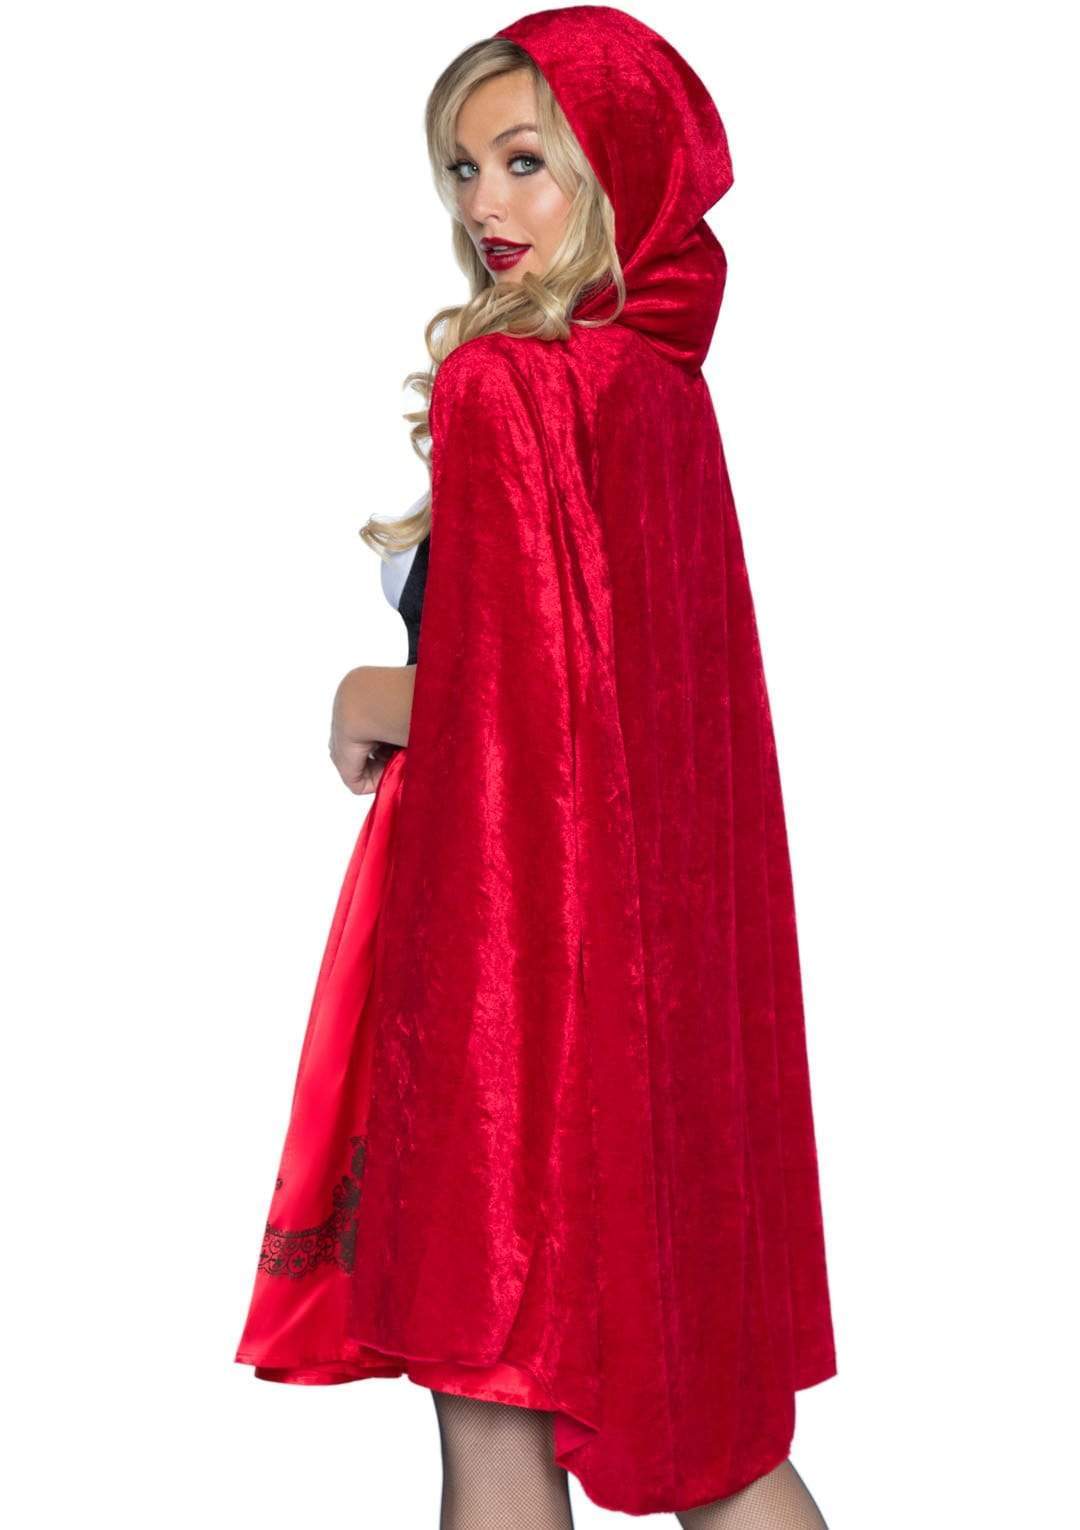 Klassisches Rotkäppchen Kostüm